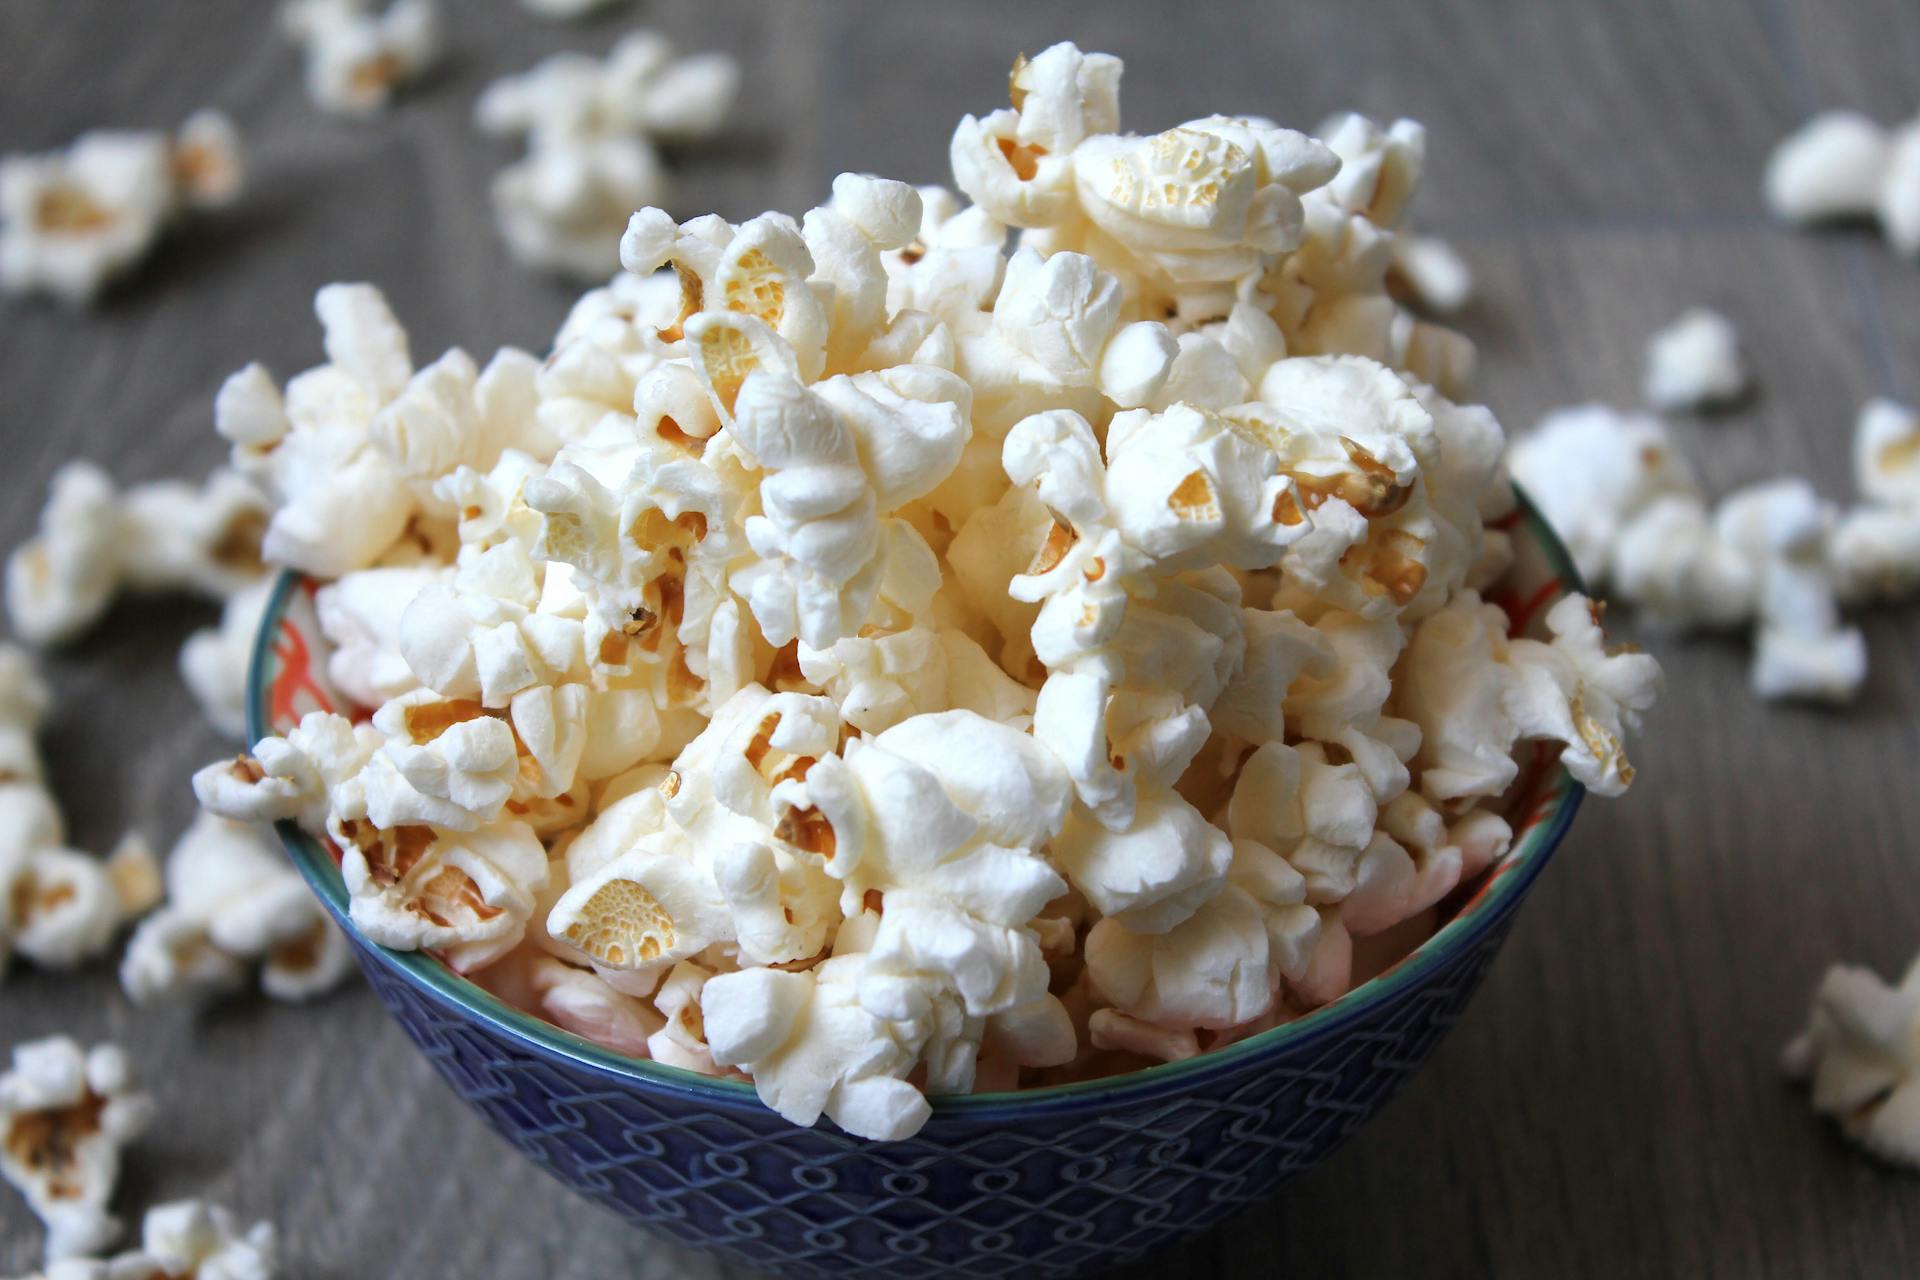 Popcorns in a ceramic bowl | Source: Pexels